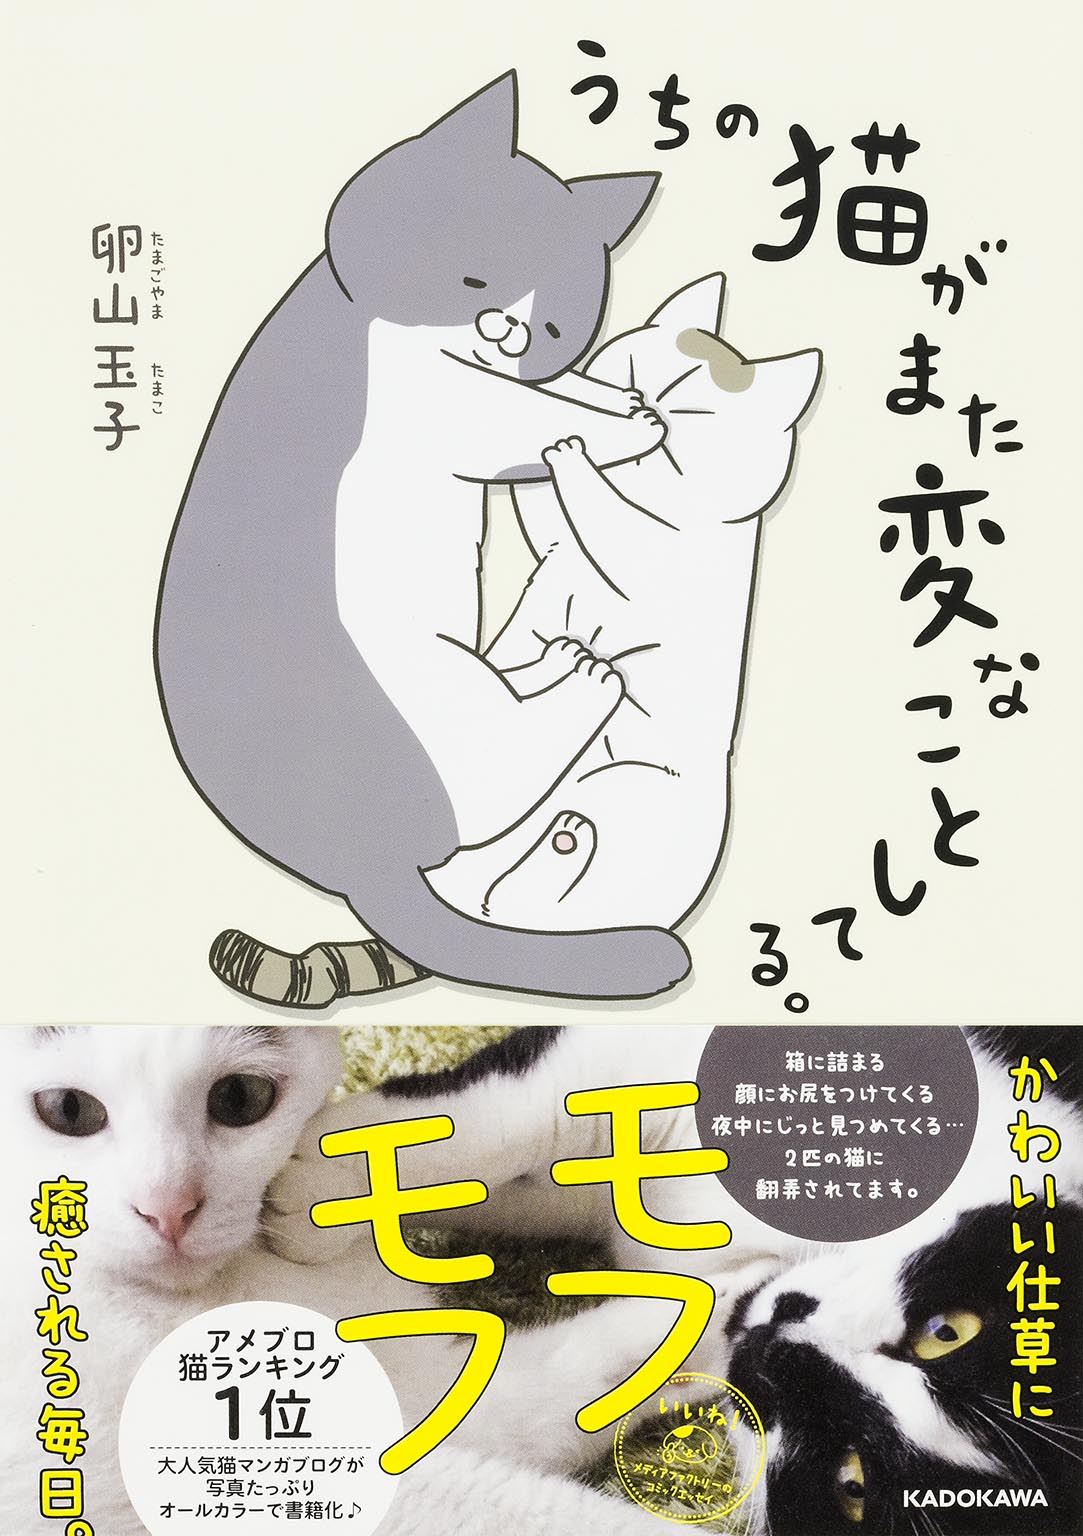 発売即重版が決定 アメブロ猫ランキング1位の大人気猫まんが うちの猫 がまた変なことしてる が描きおろしを多数加えて発売 株式会社kadokawaのプレスリリース